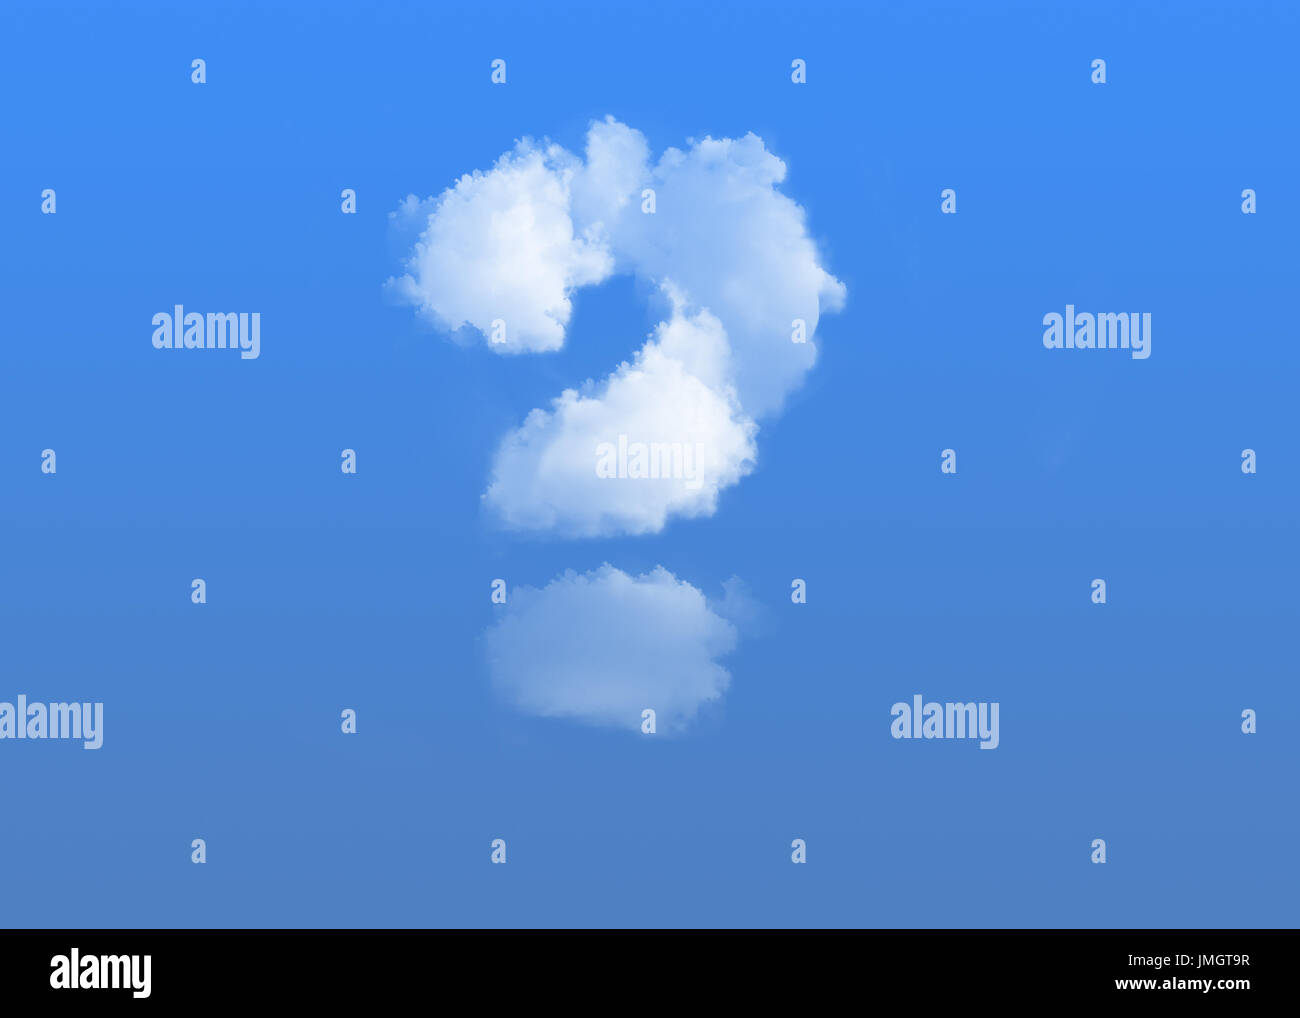 Signo de interrogación hecha de nubes sobre fondo azul. Foto de stock